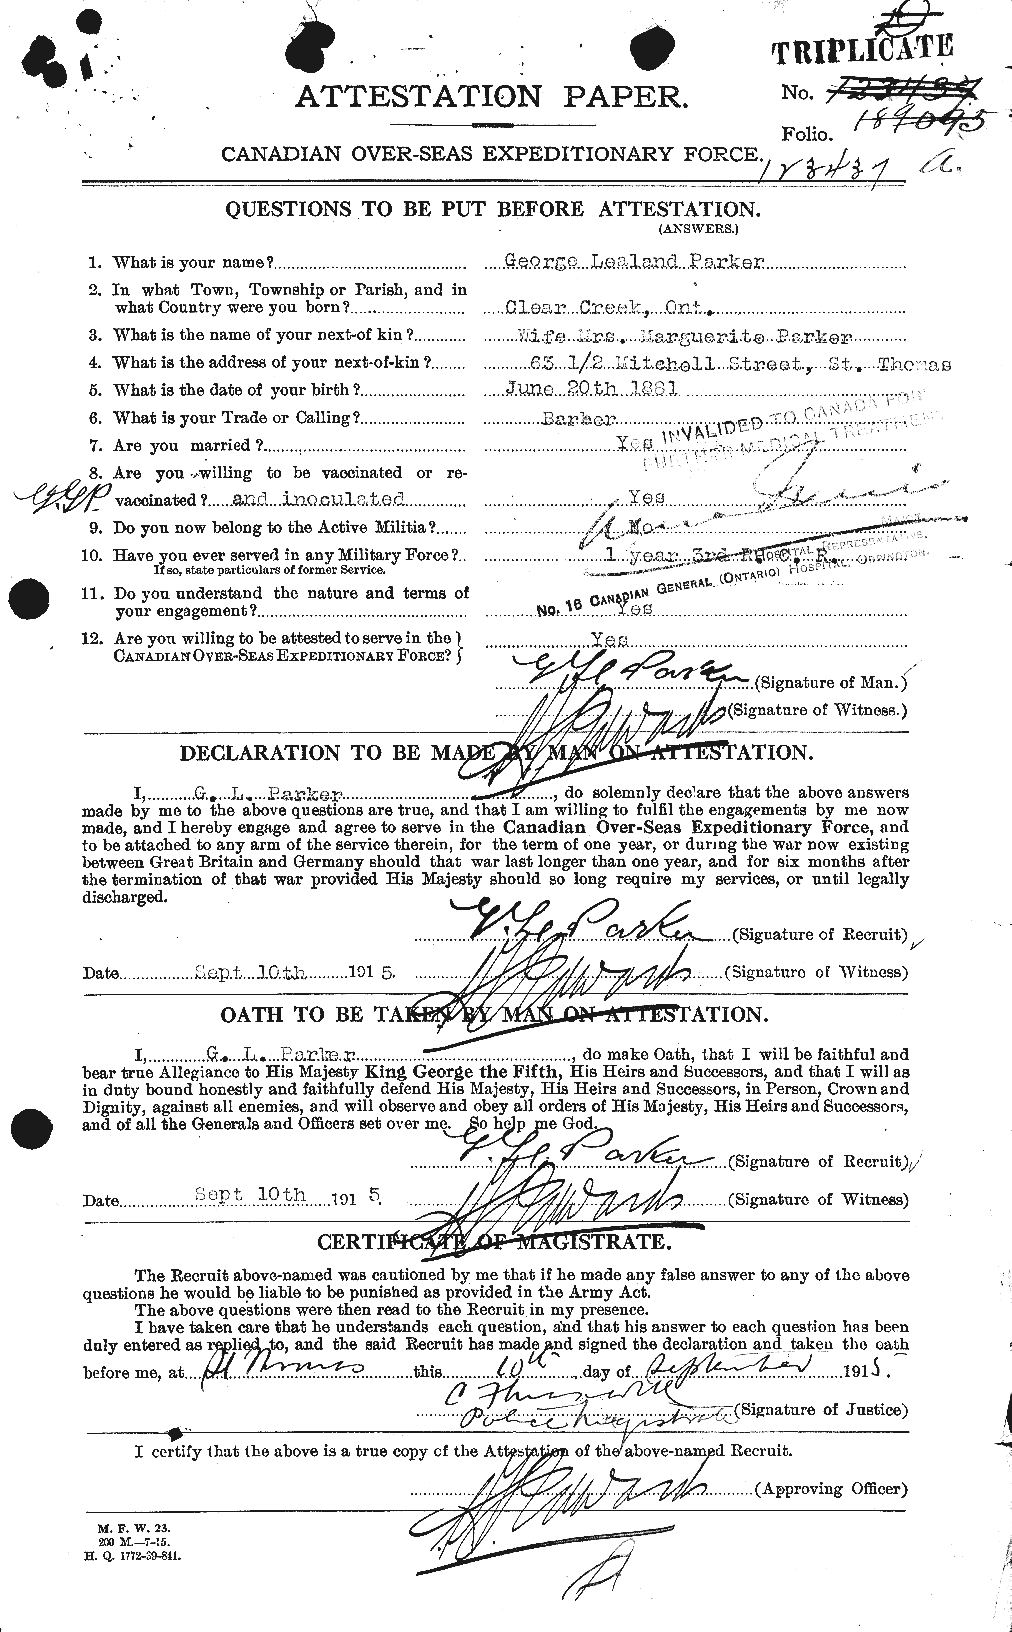 Dossiers du Personnel de la Première Guerre mondiale - CEC 565275a